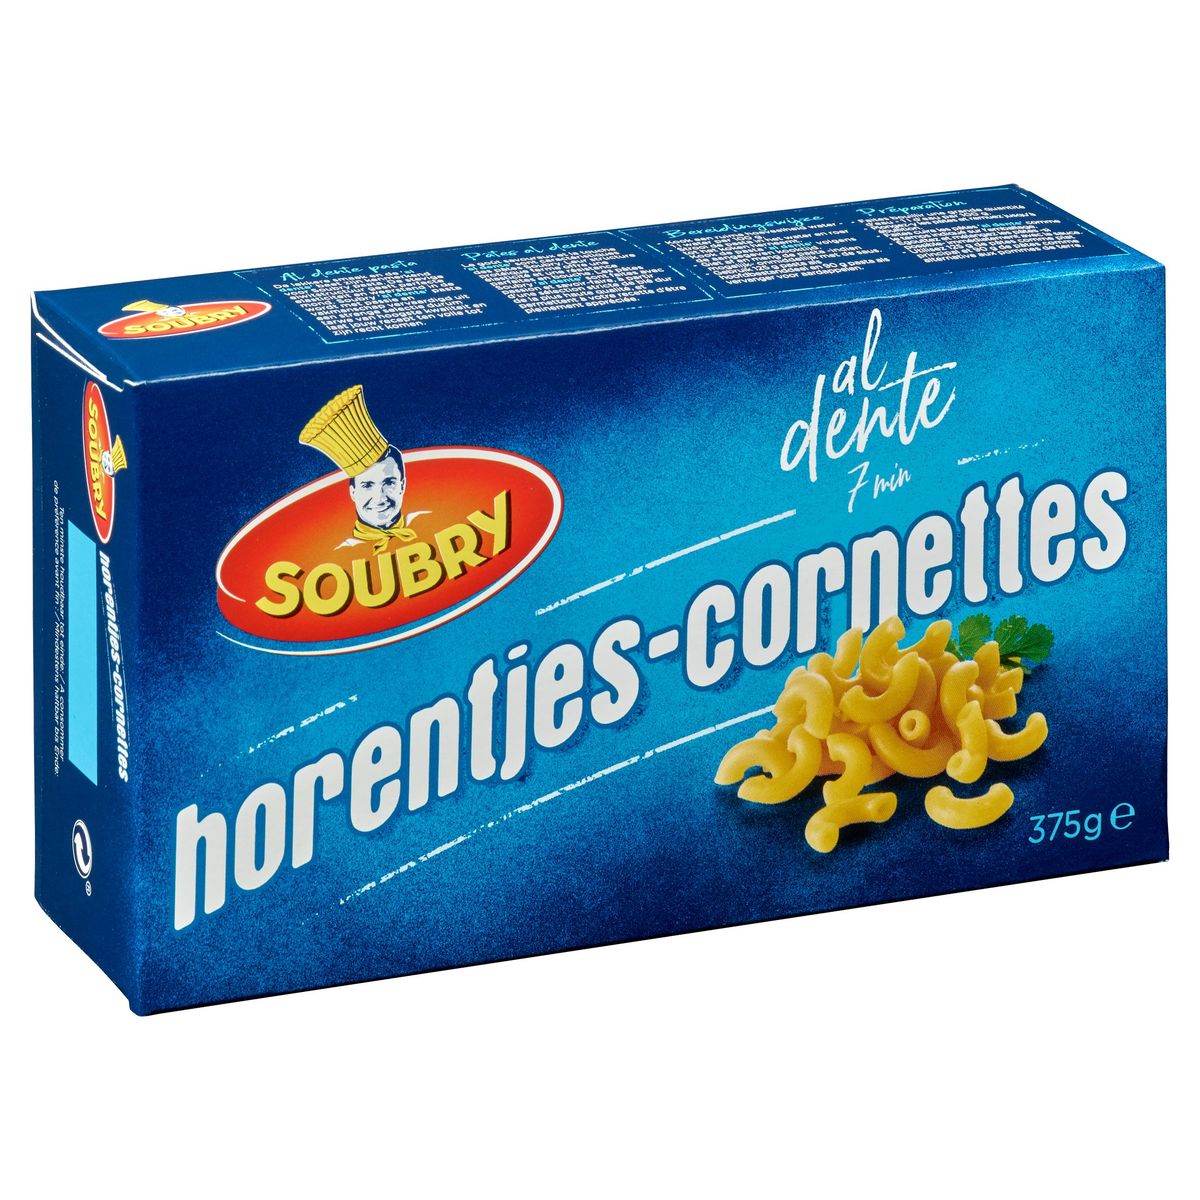 Soubry Pasta Horentjes 375g